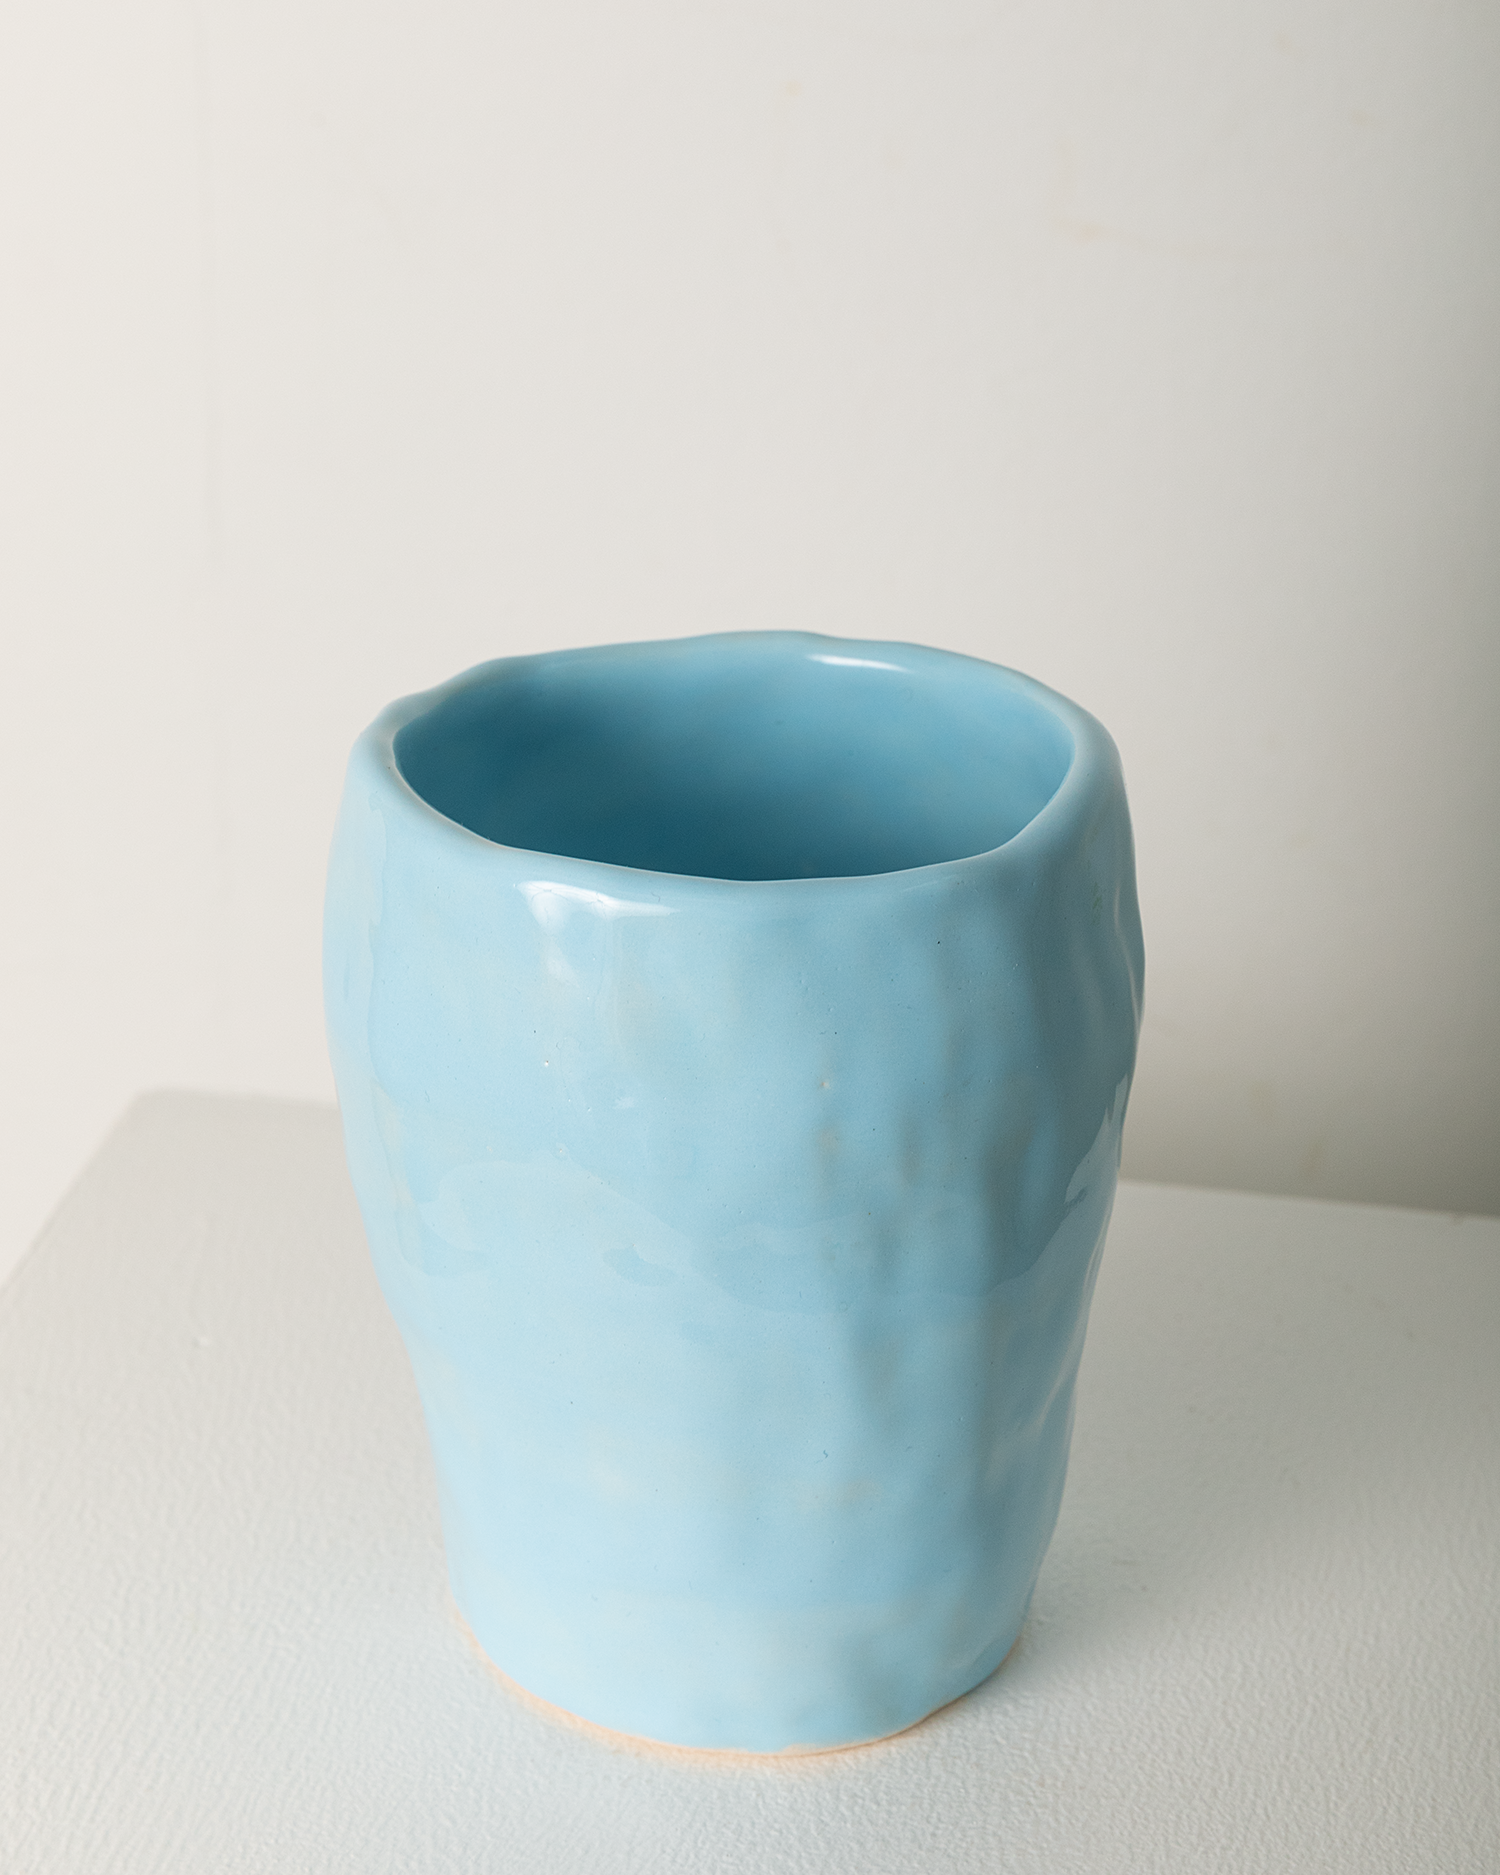 Vase no. 1